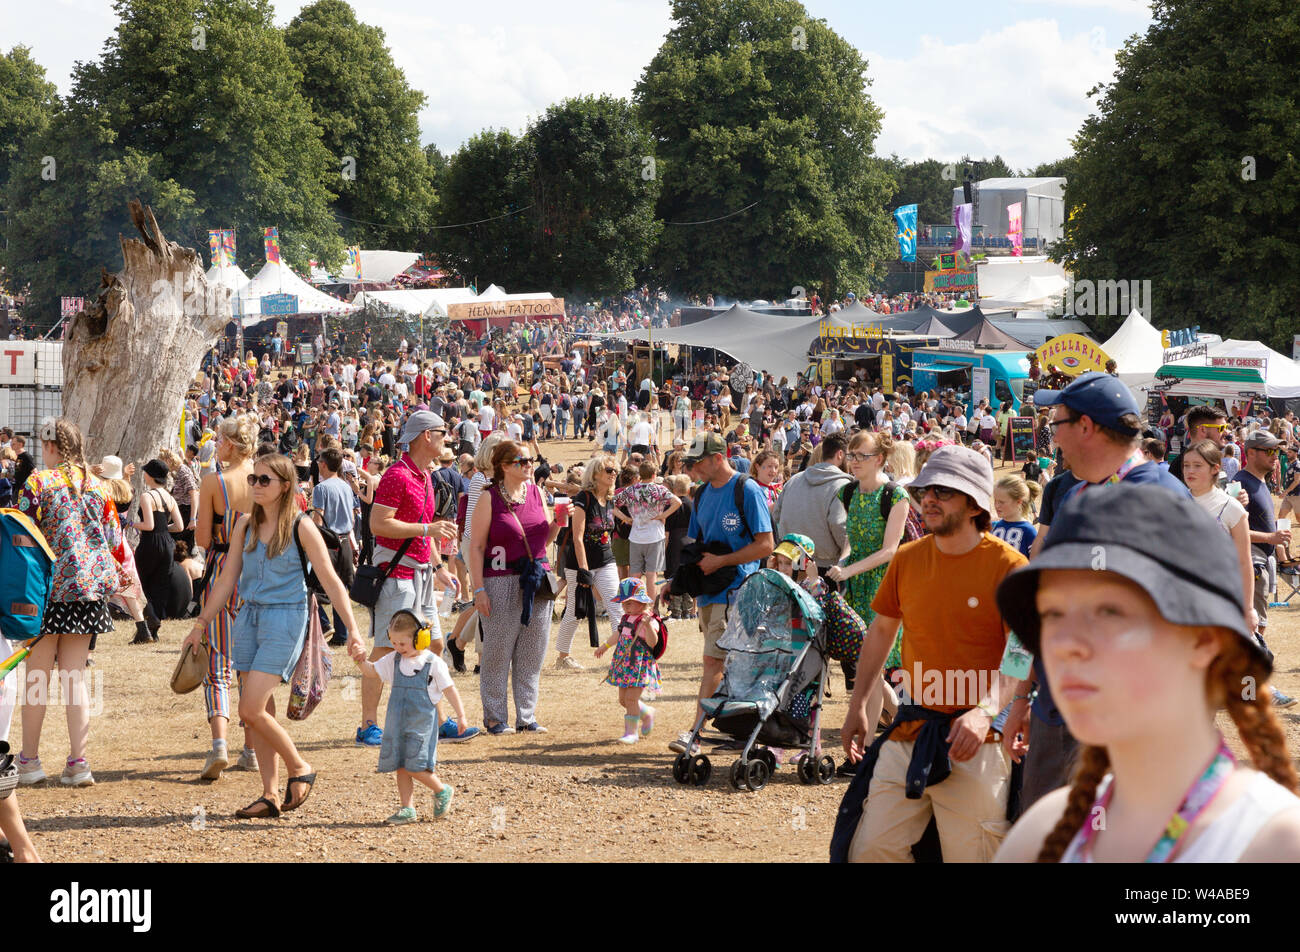 Festival Crowd UK; Latitude Festival Suffolk UK - überfüllte Szene mit Menschenmassen beim Musikfestival, Suffolk Latitude UK 2019 Stockfoto